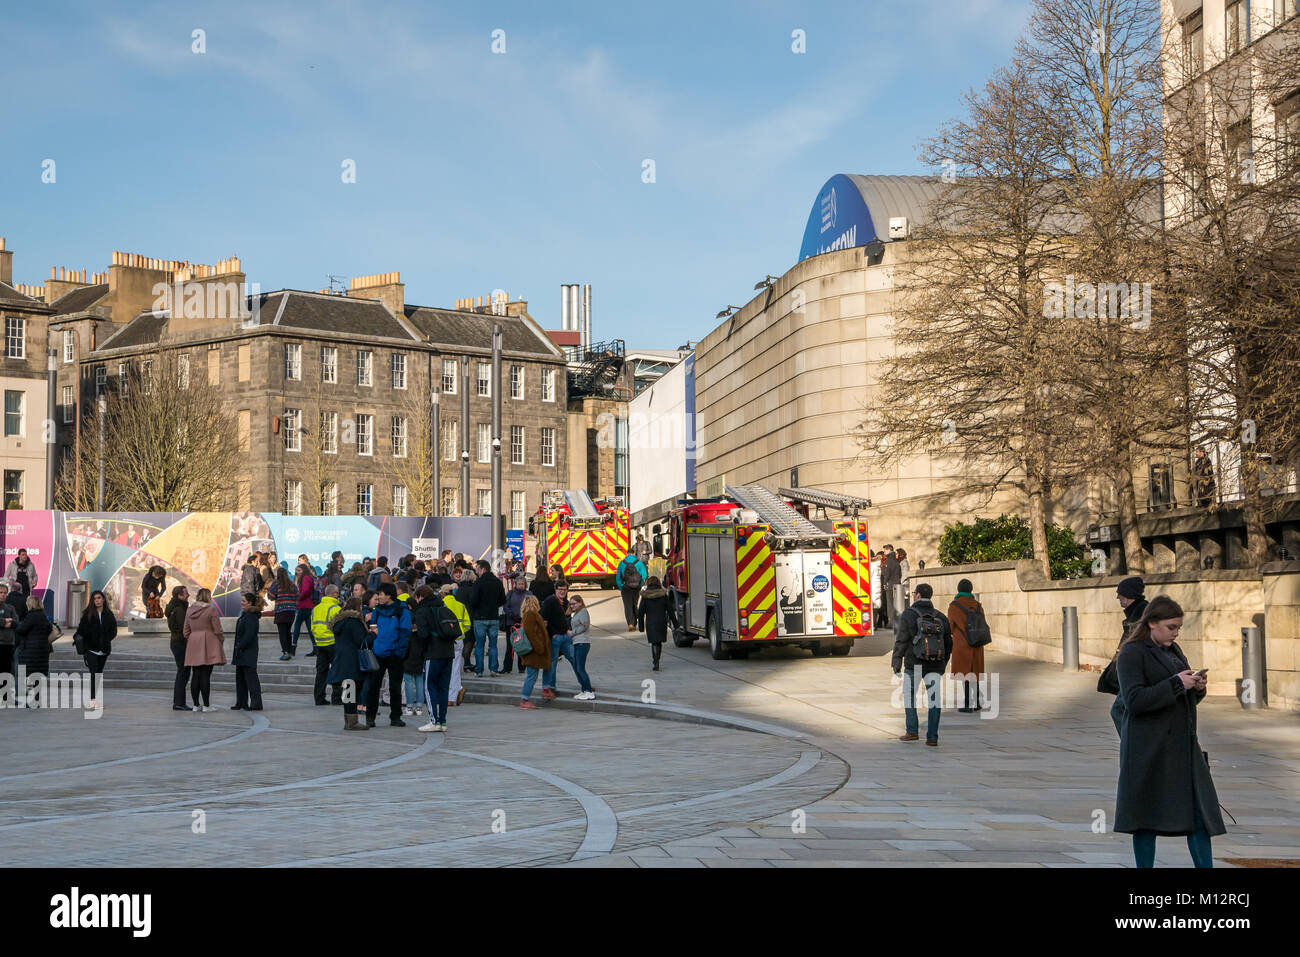 Feuerwehrfahrzeuge, die an einem Fehlalarm teilnehmen, rufen an der Potterow University of Edinburgh Students Association, Briston Square, Edinburgh, Schottland, Großbritannien Stockfoto